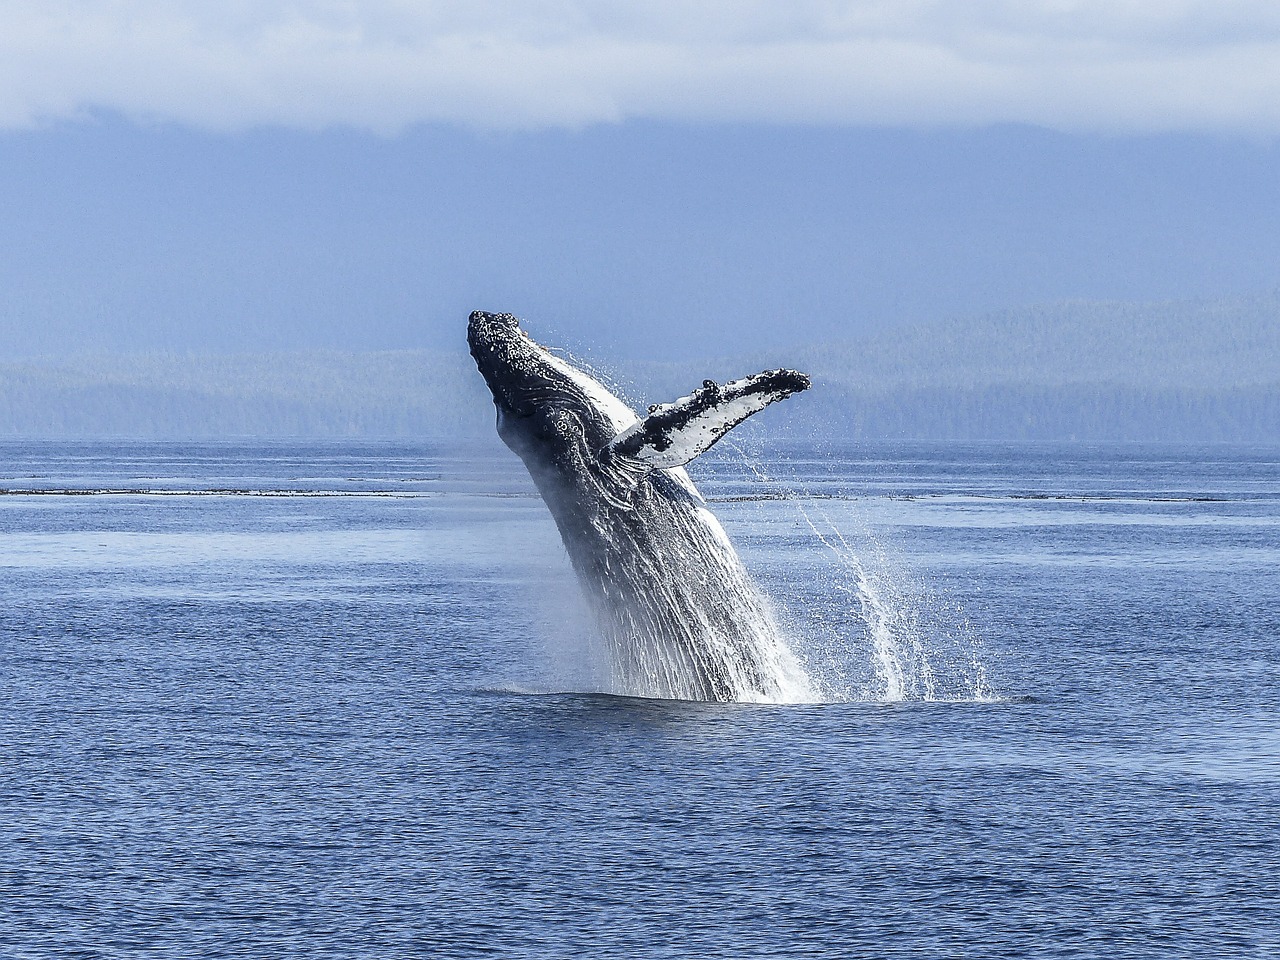 humpback-whale-436120_1280.jpg